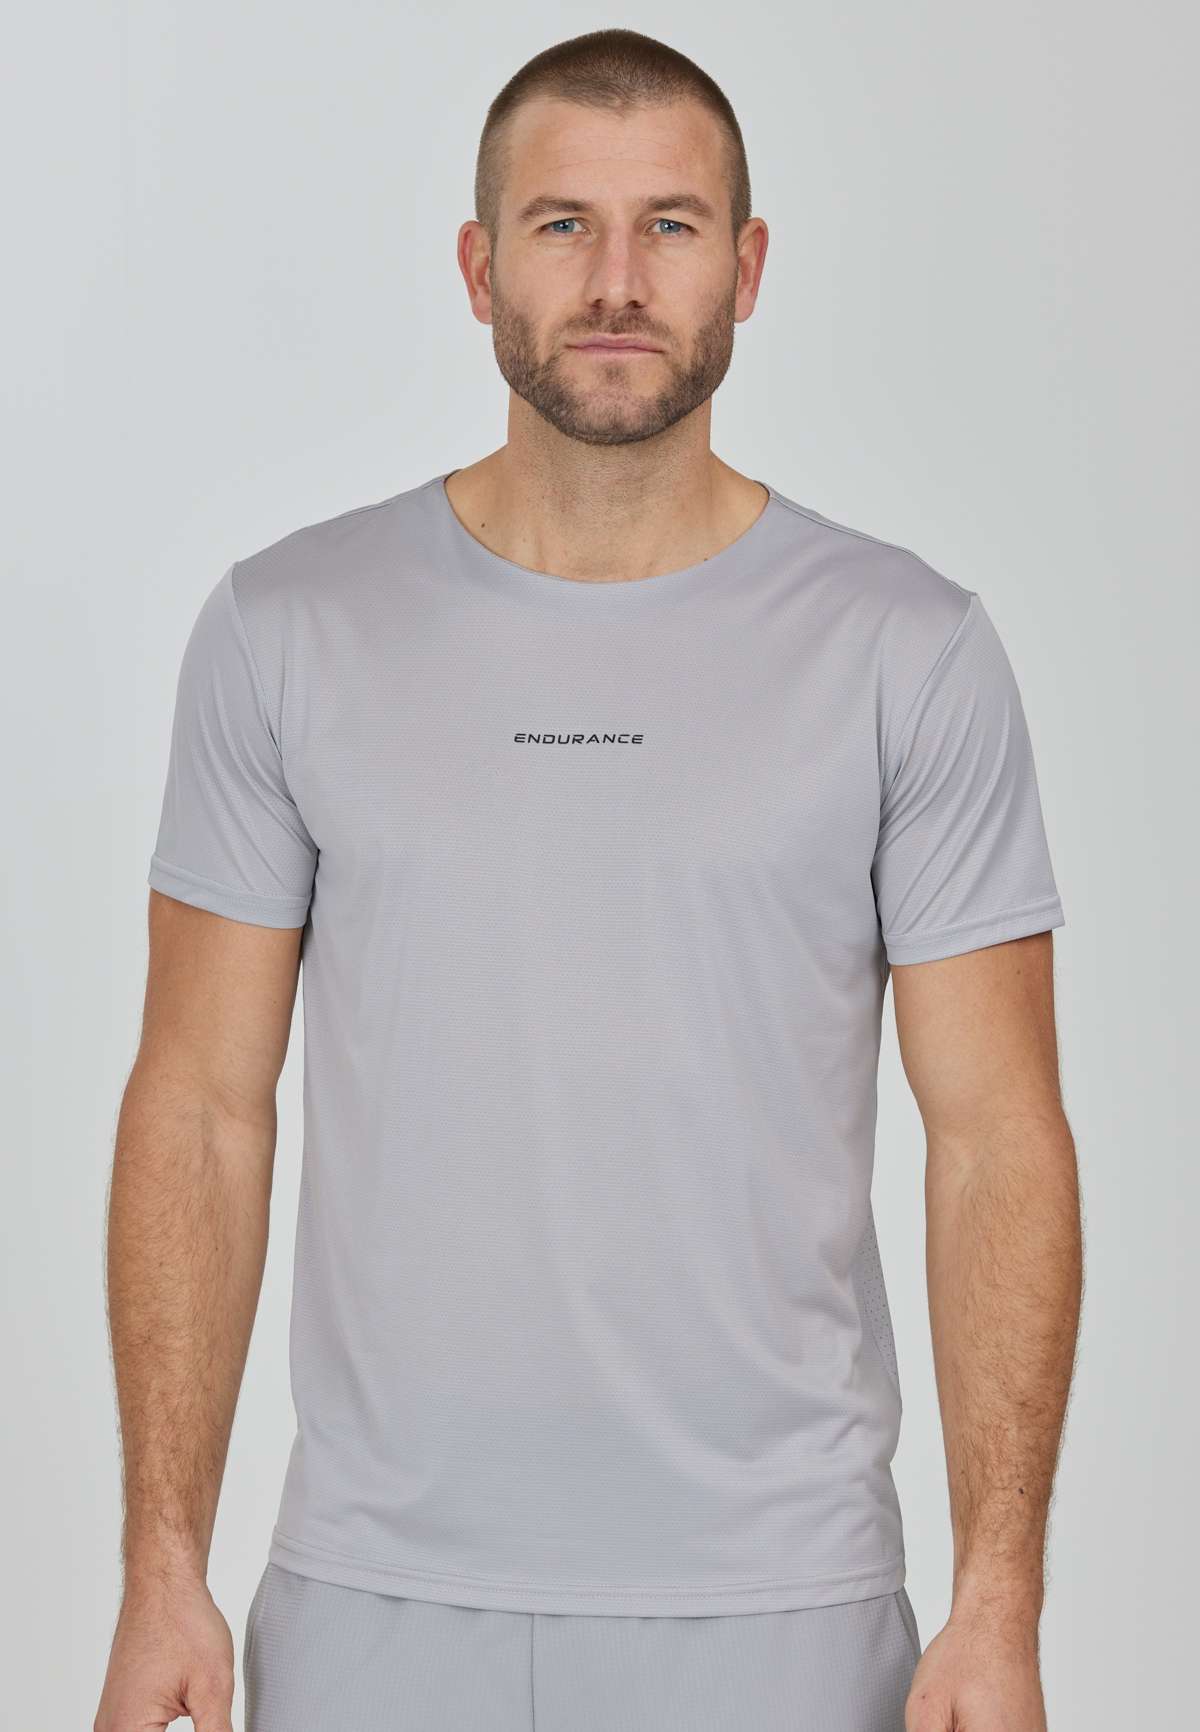 Функциональная рубашка (1 шт.), с технологией Quick Dry.